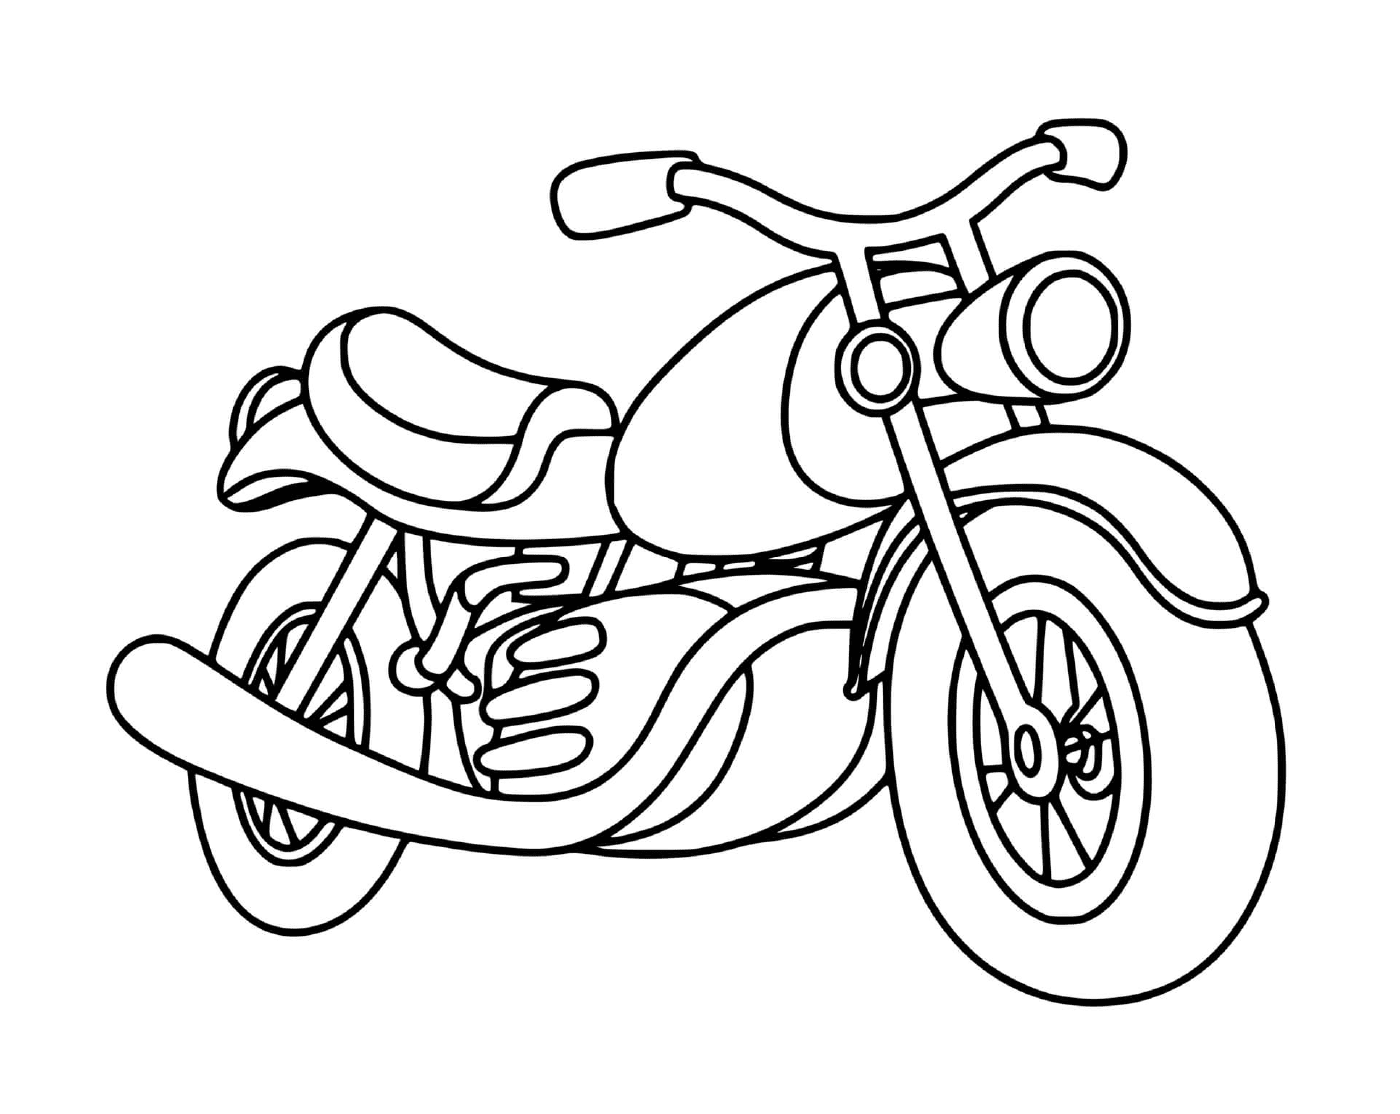  Motocicleta clásica colocada en el suelo 